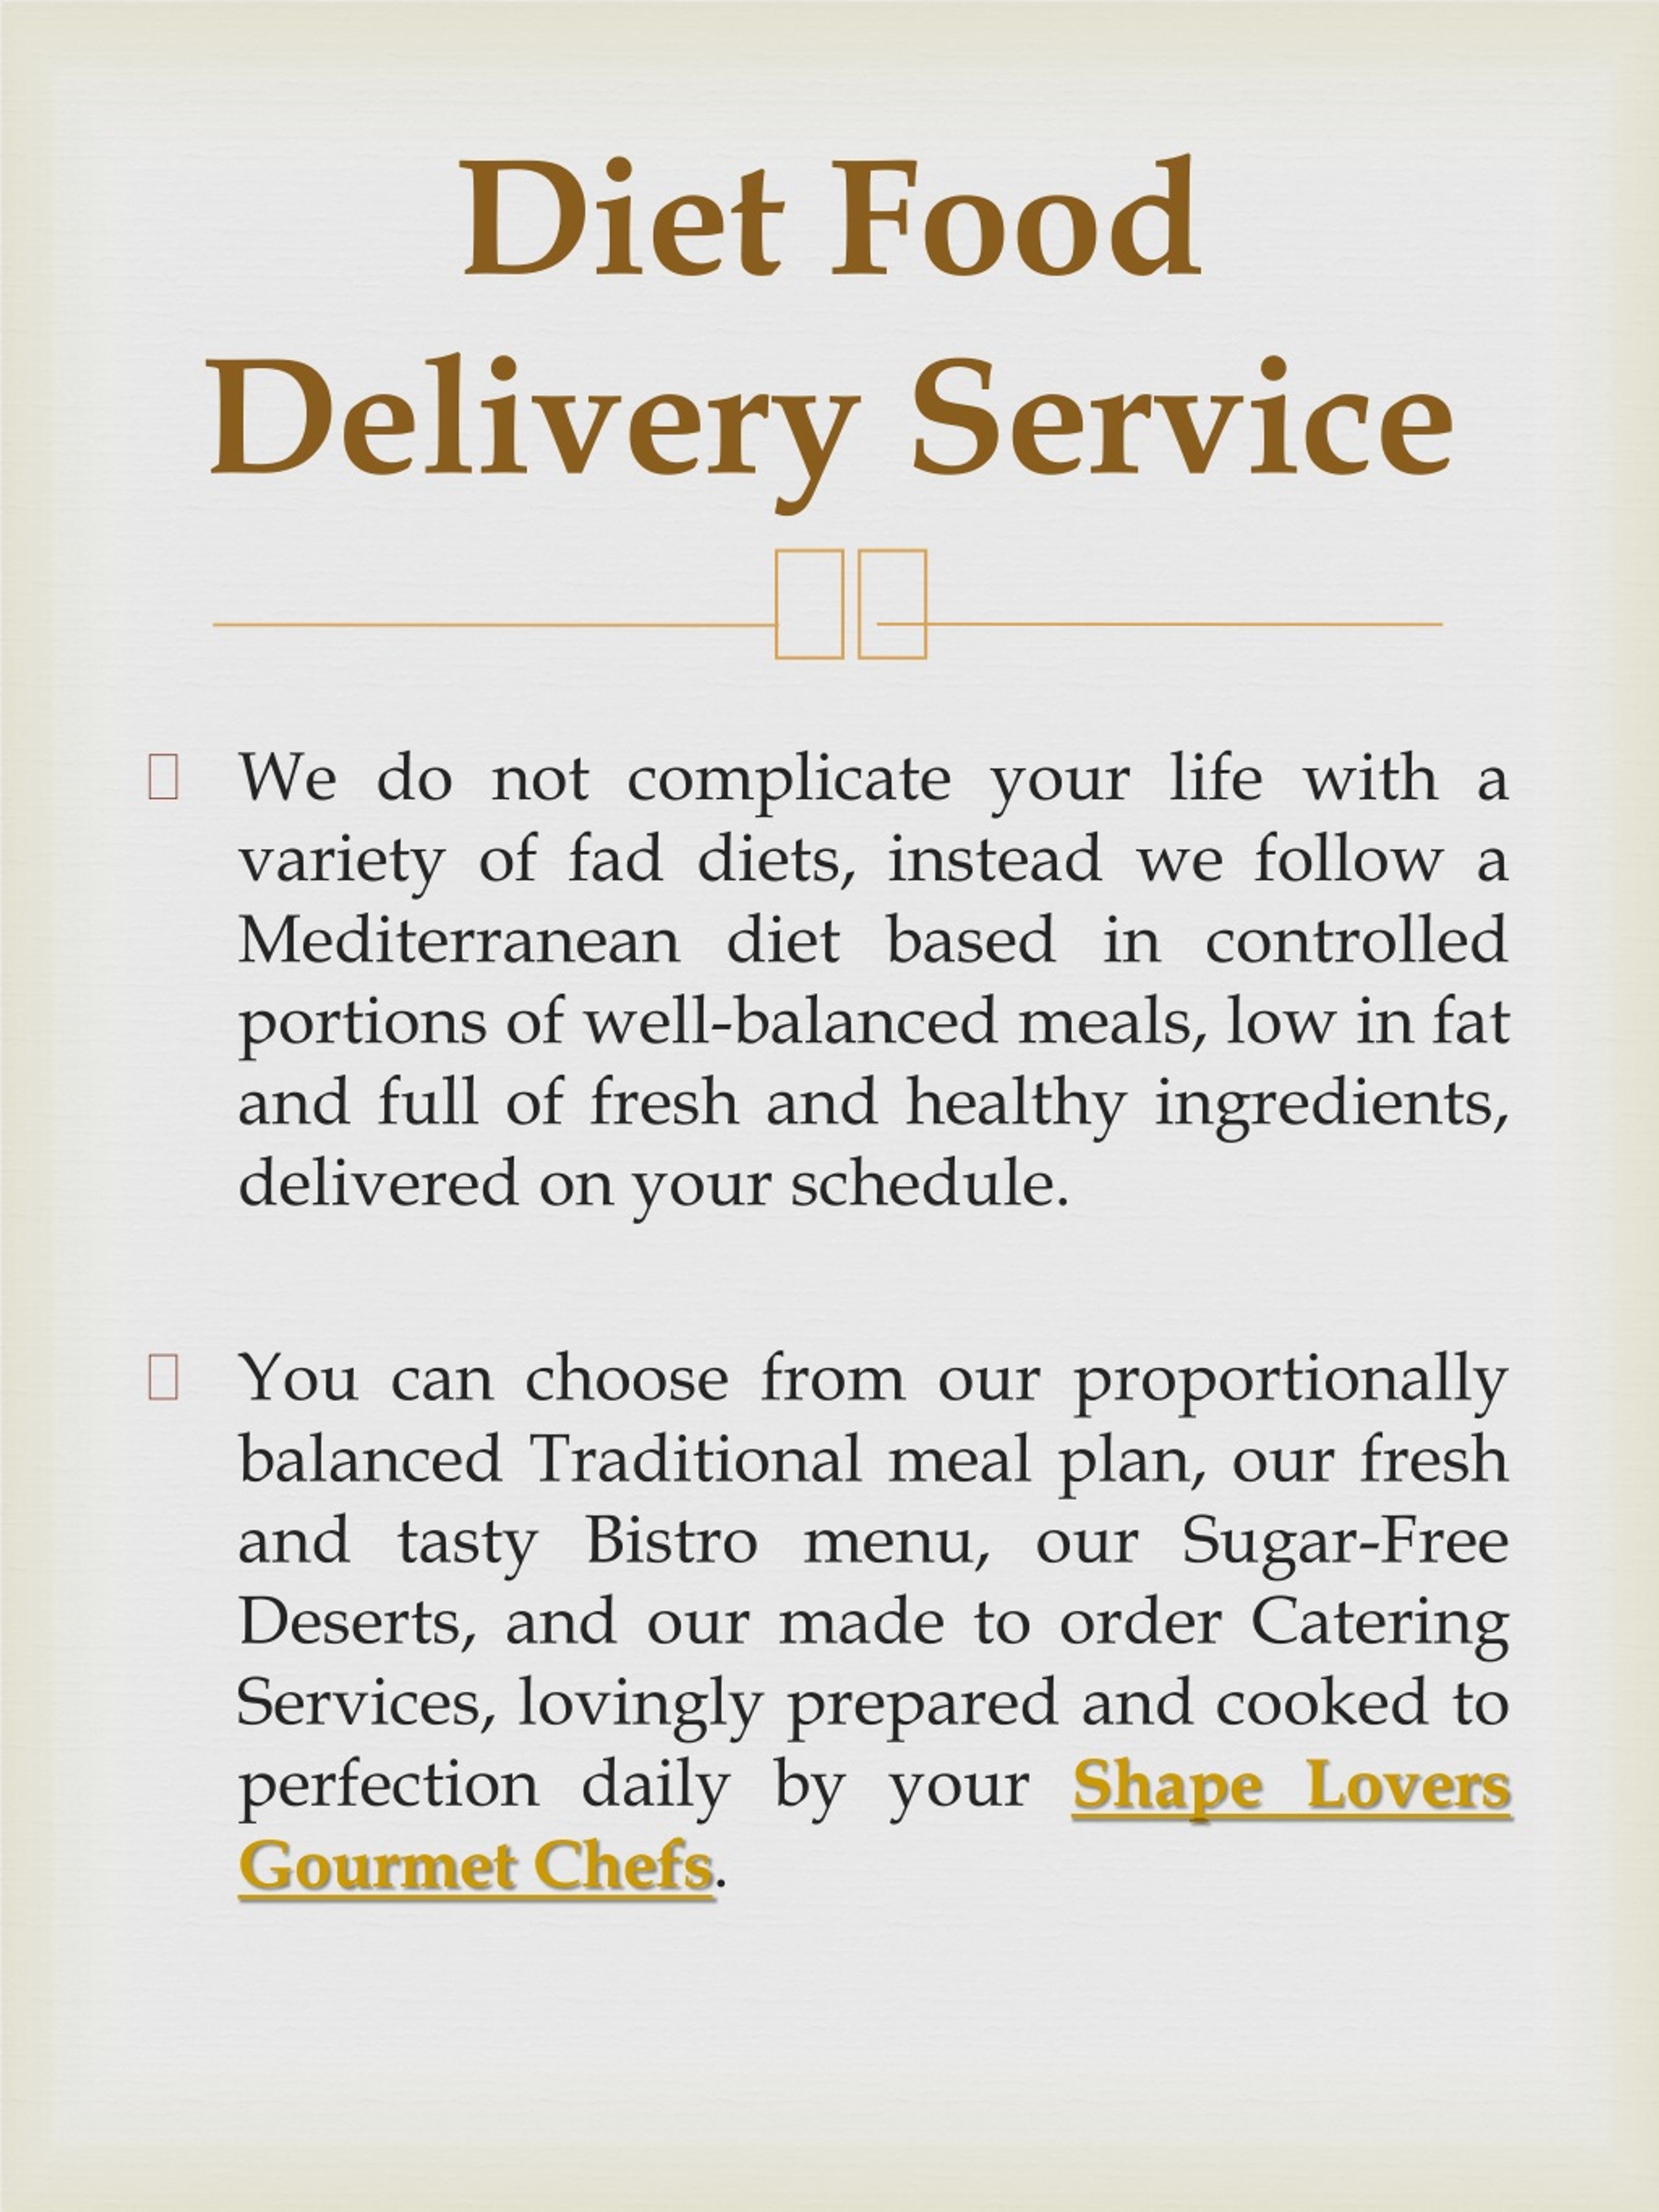 https://image4.slideserve.com/1497835/diet-food-delivery-service-l.jpg